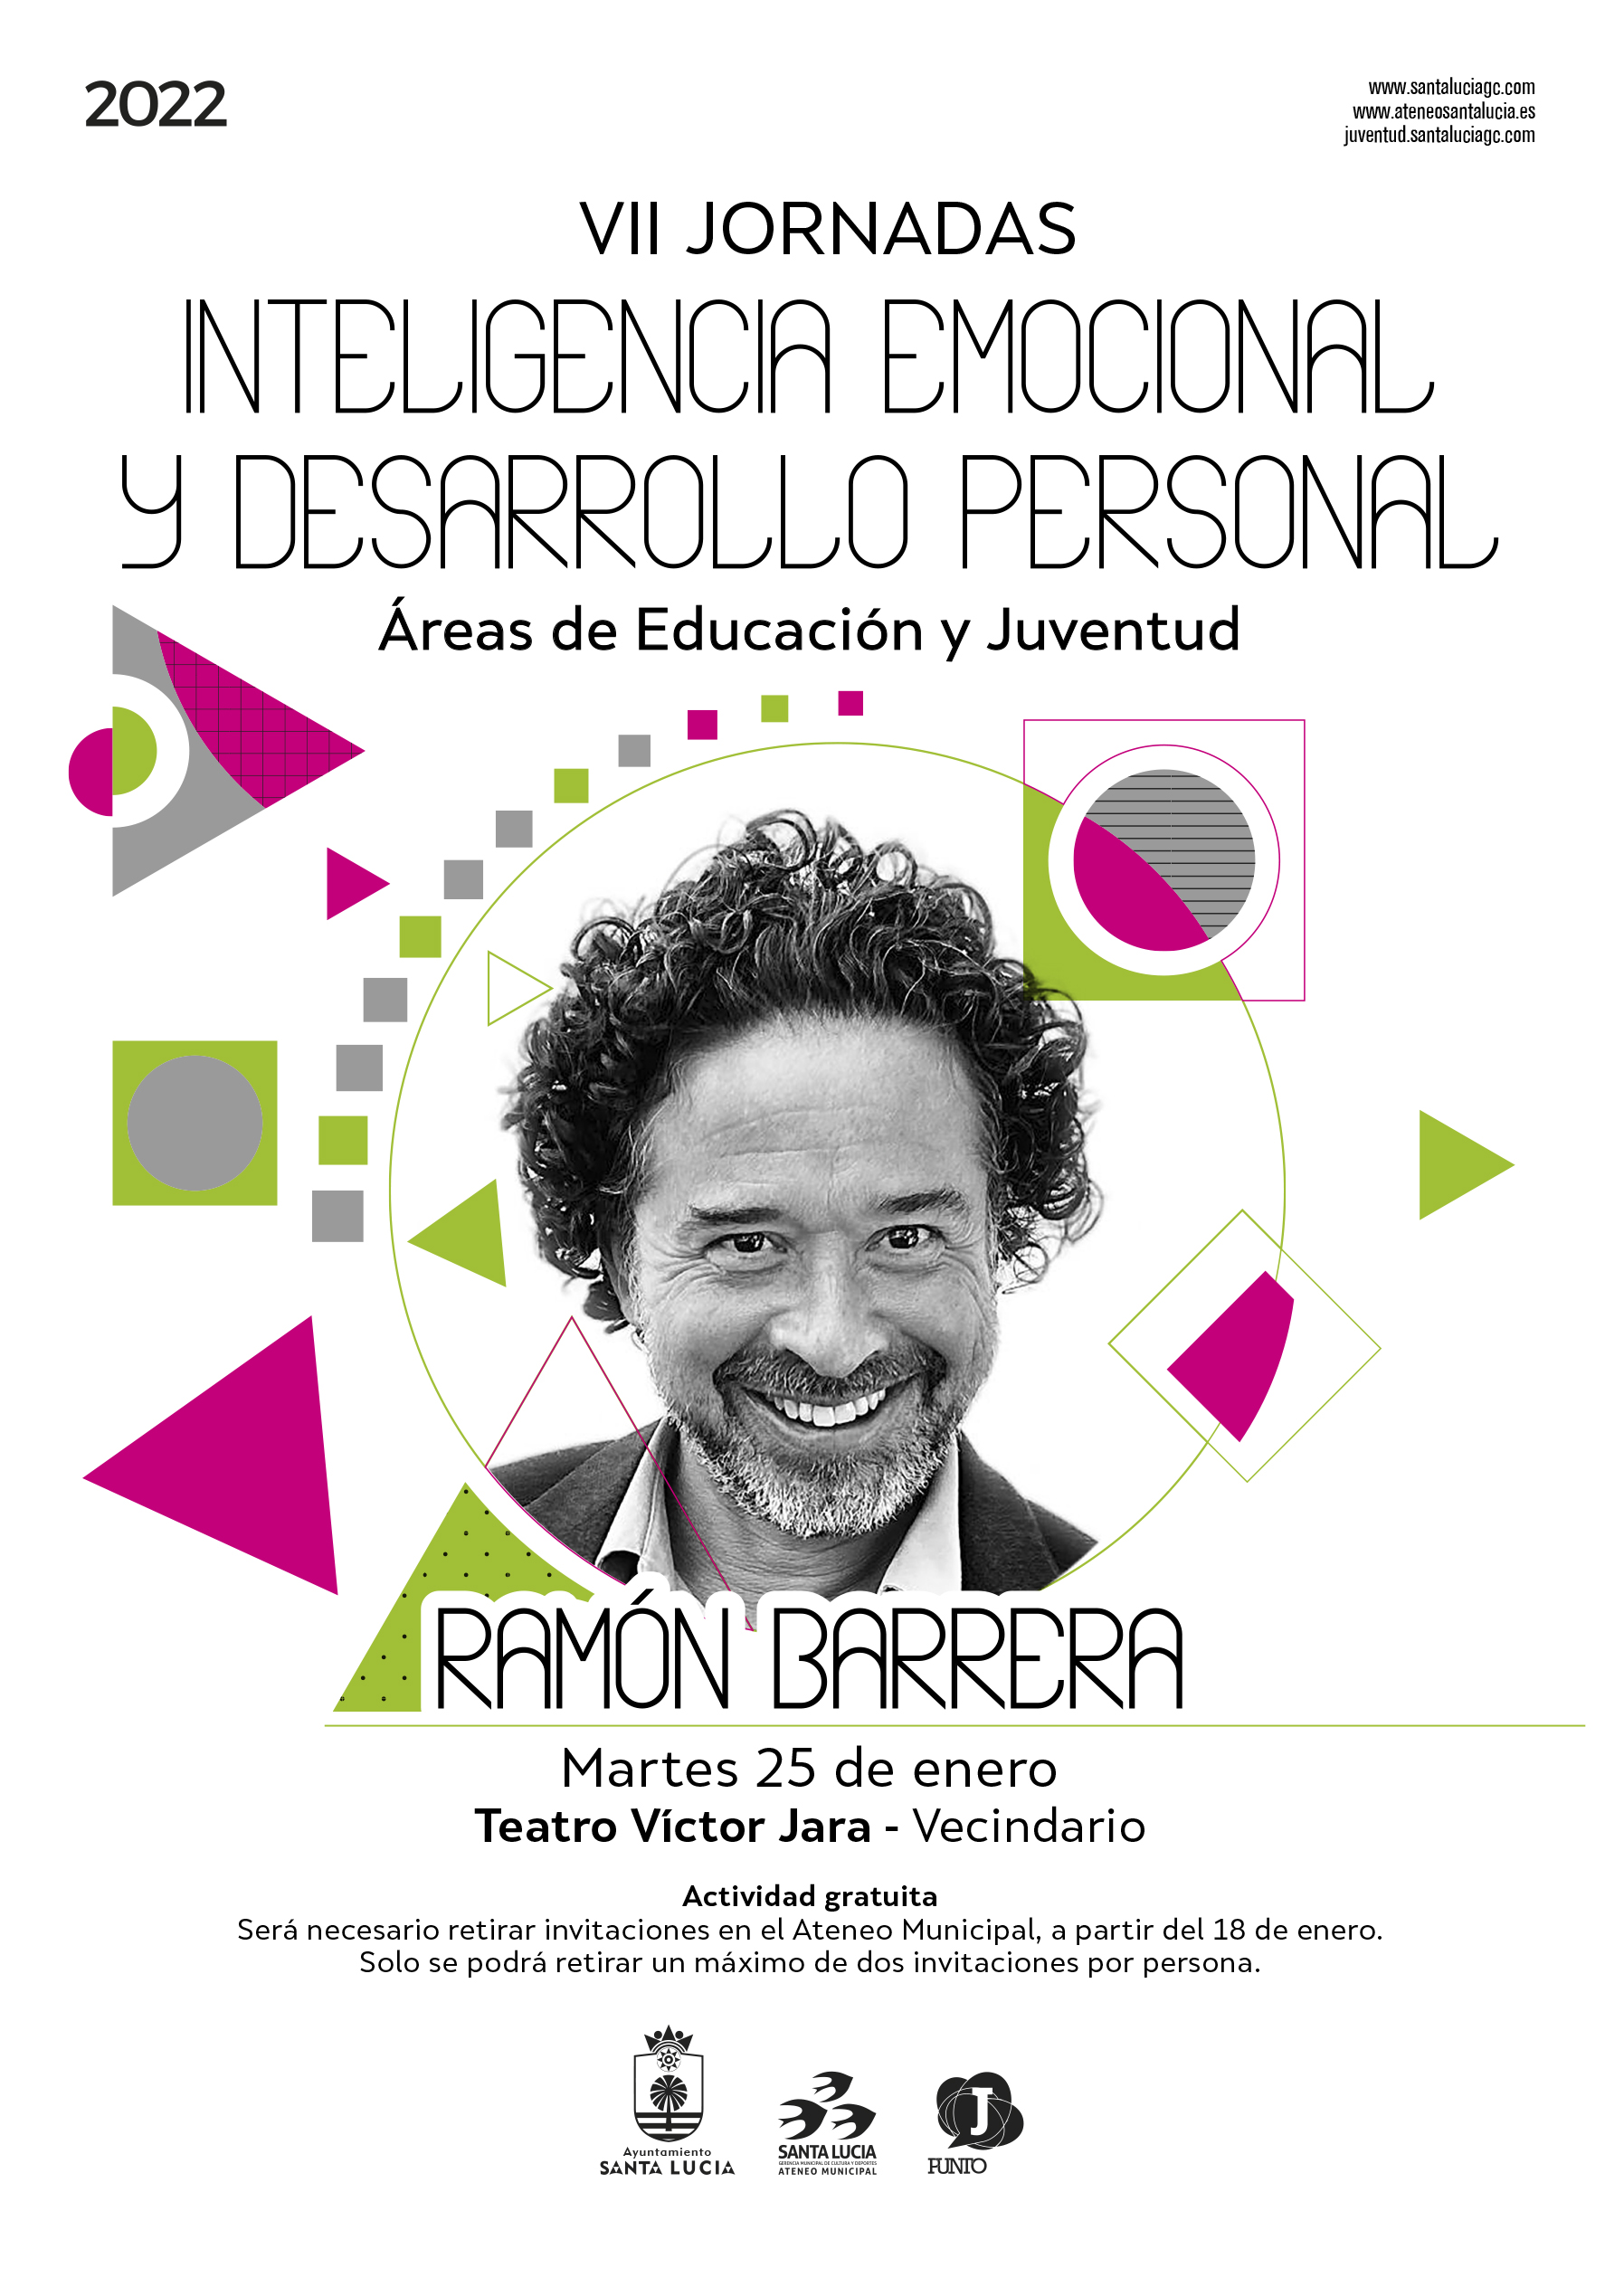  El formador Ramón Barrera ofrece dos conferencias sobre el arte de emprender y de aprender en el teatro Víctor Jara 